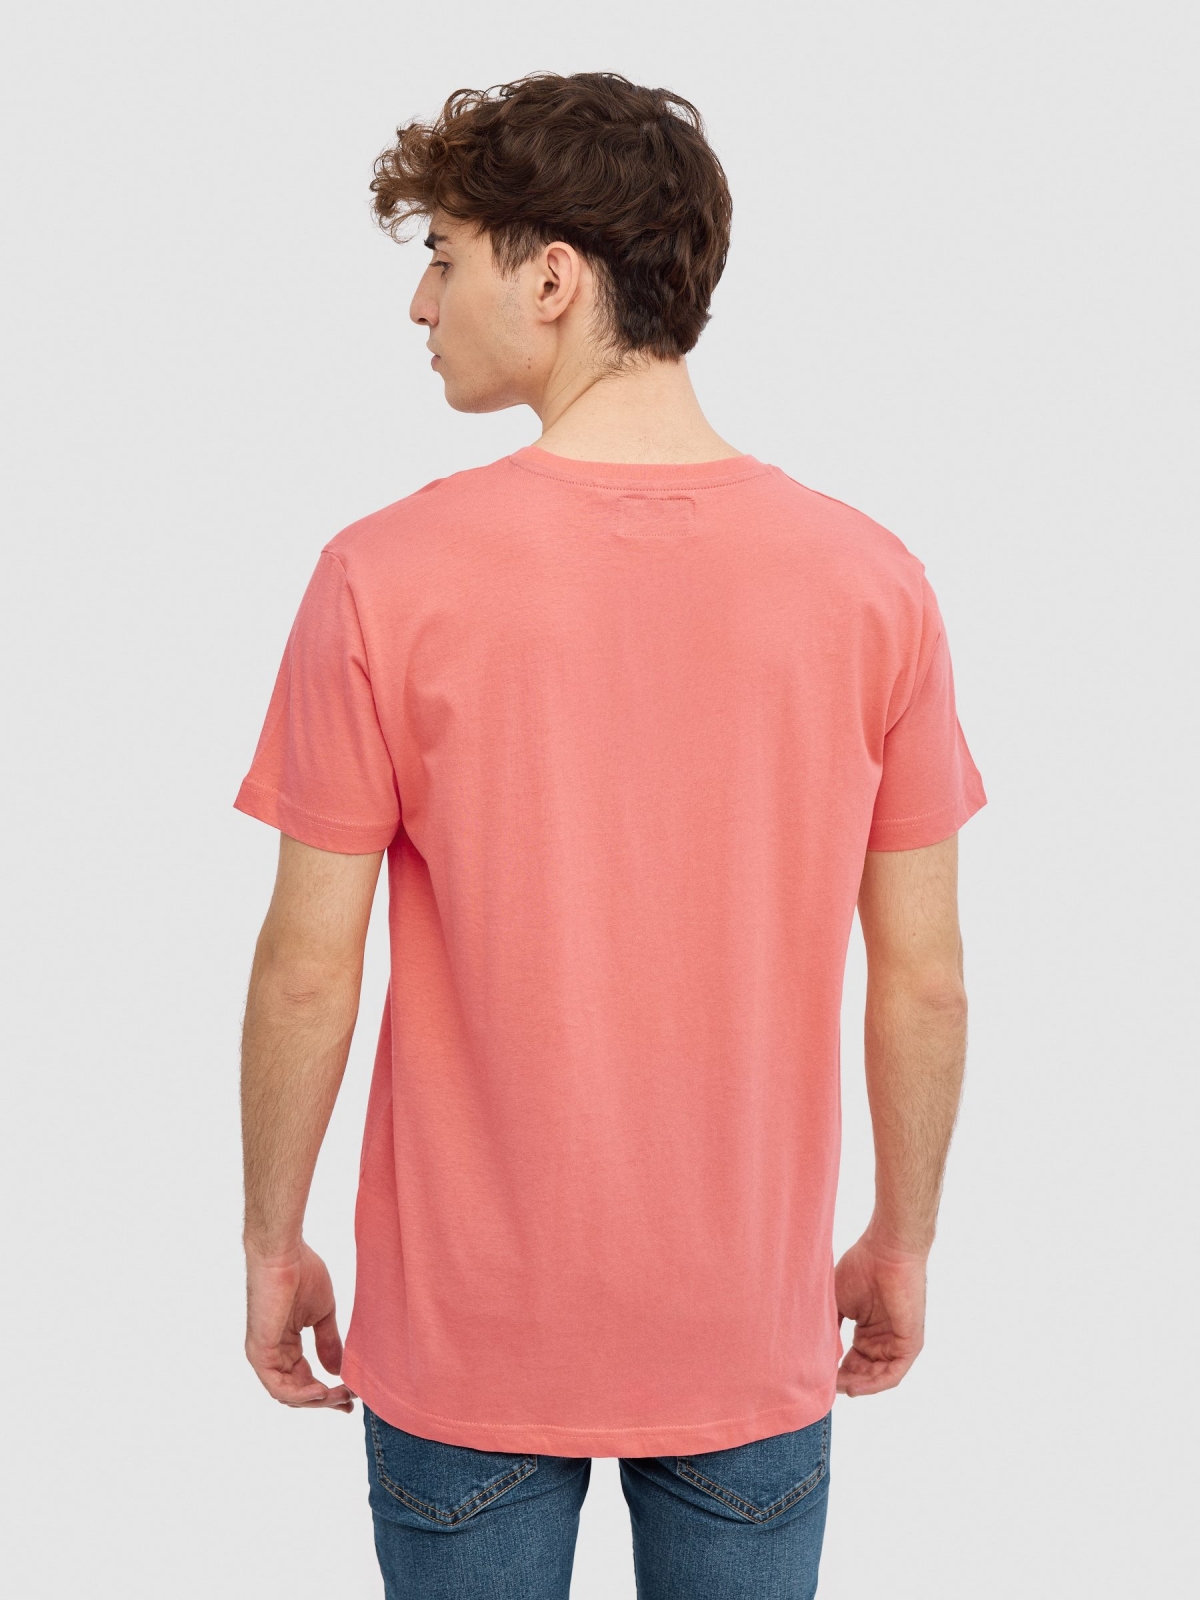 Camiseta logo INSIDE rosa vista media trasera